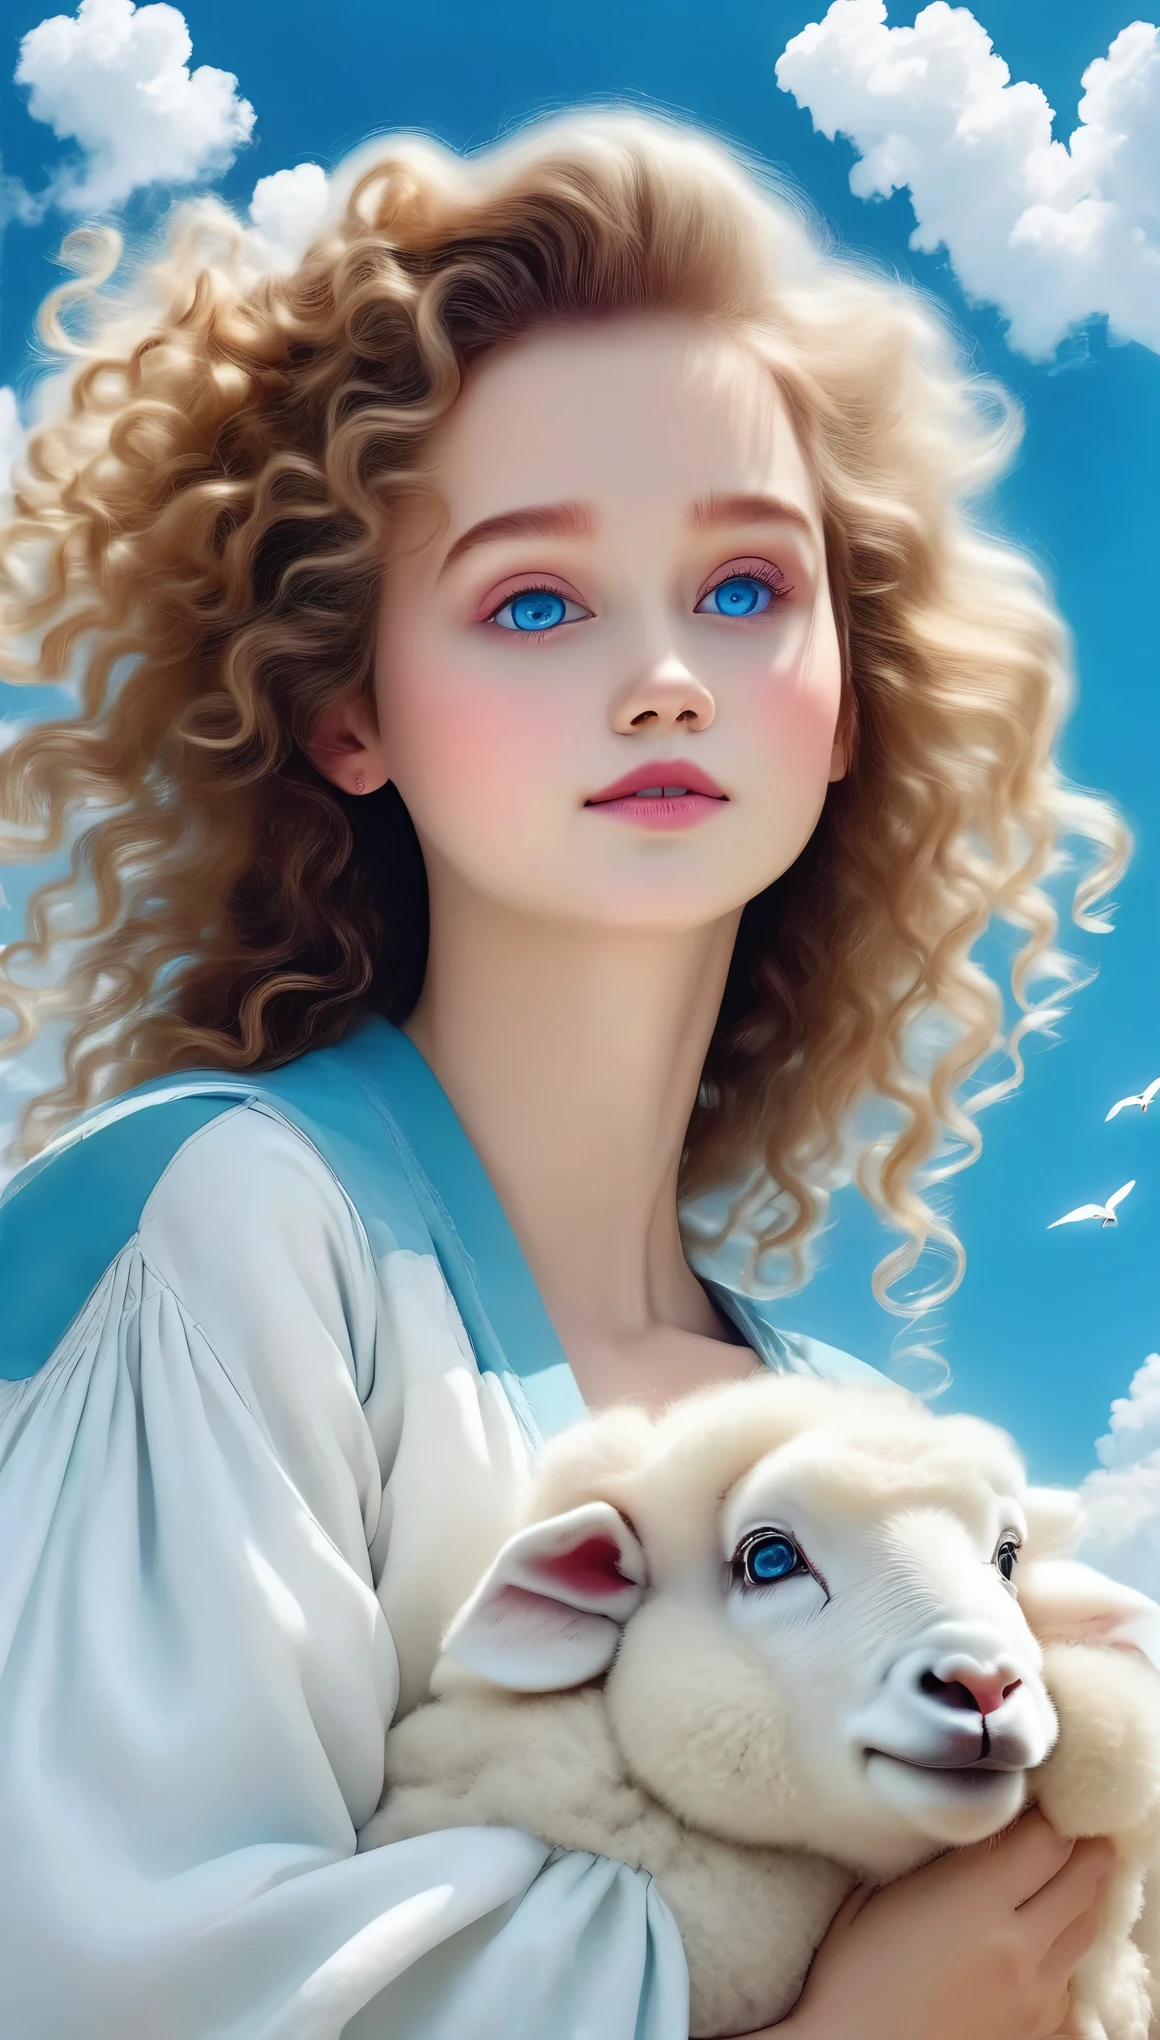 1 девочка,птица,красивые детальные голубые глаза,облако,вьющиеся волосы,Открытый,пушистая отделка,pom pom(одежда),овца,небо,Один,верхняя часть тела,волнистые волосы,(Лучшее качество,4K,8К,Высокое разрешение,шедевр:1.2),ультрадетализированный,(реалистичный,photoреалистичный,photo-реалистичный:1.37),красивый портрет,фантазия,Магический реализм,яркие цвета,драматическое освещение